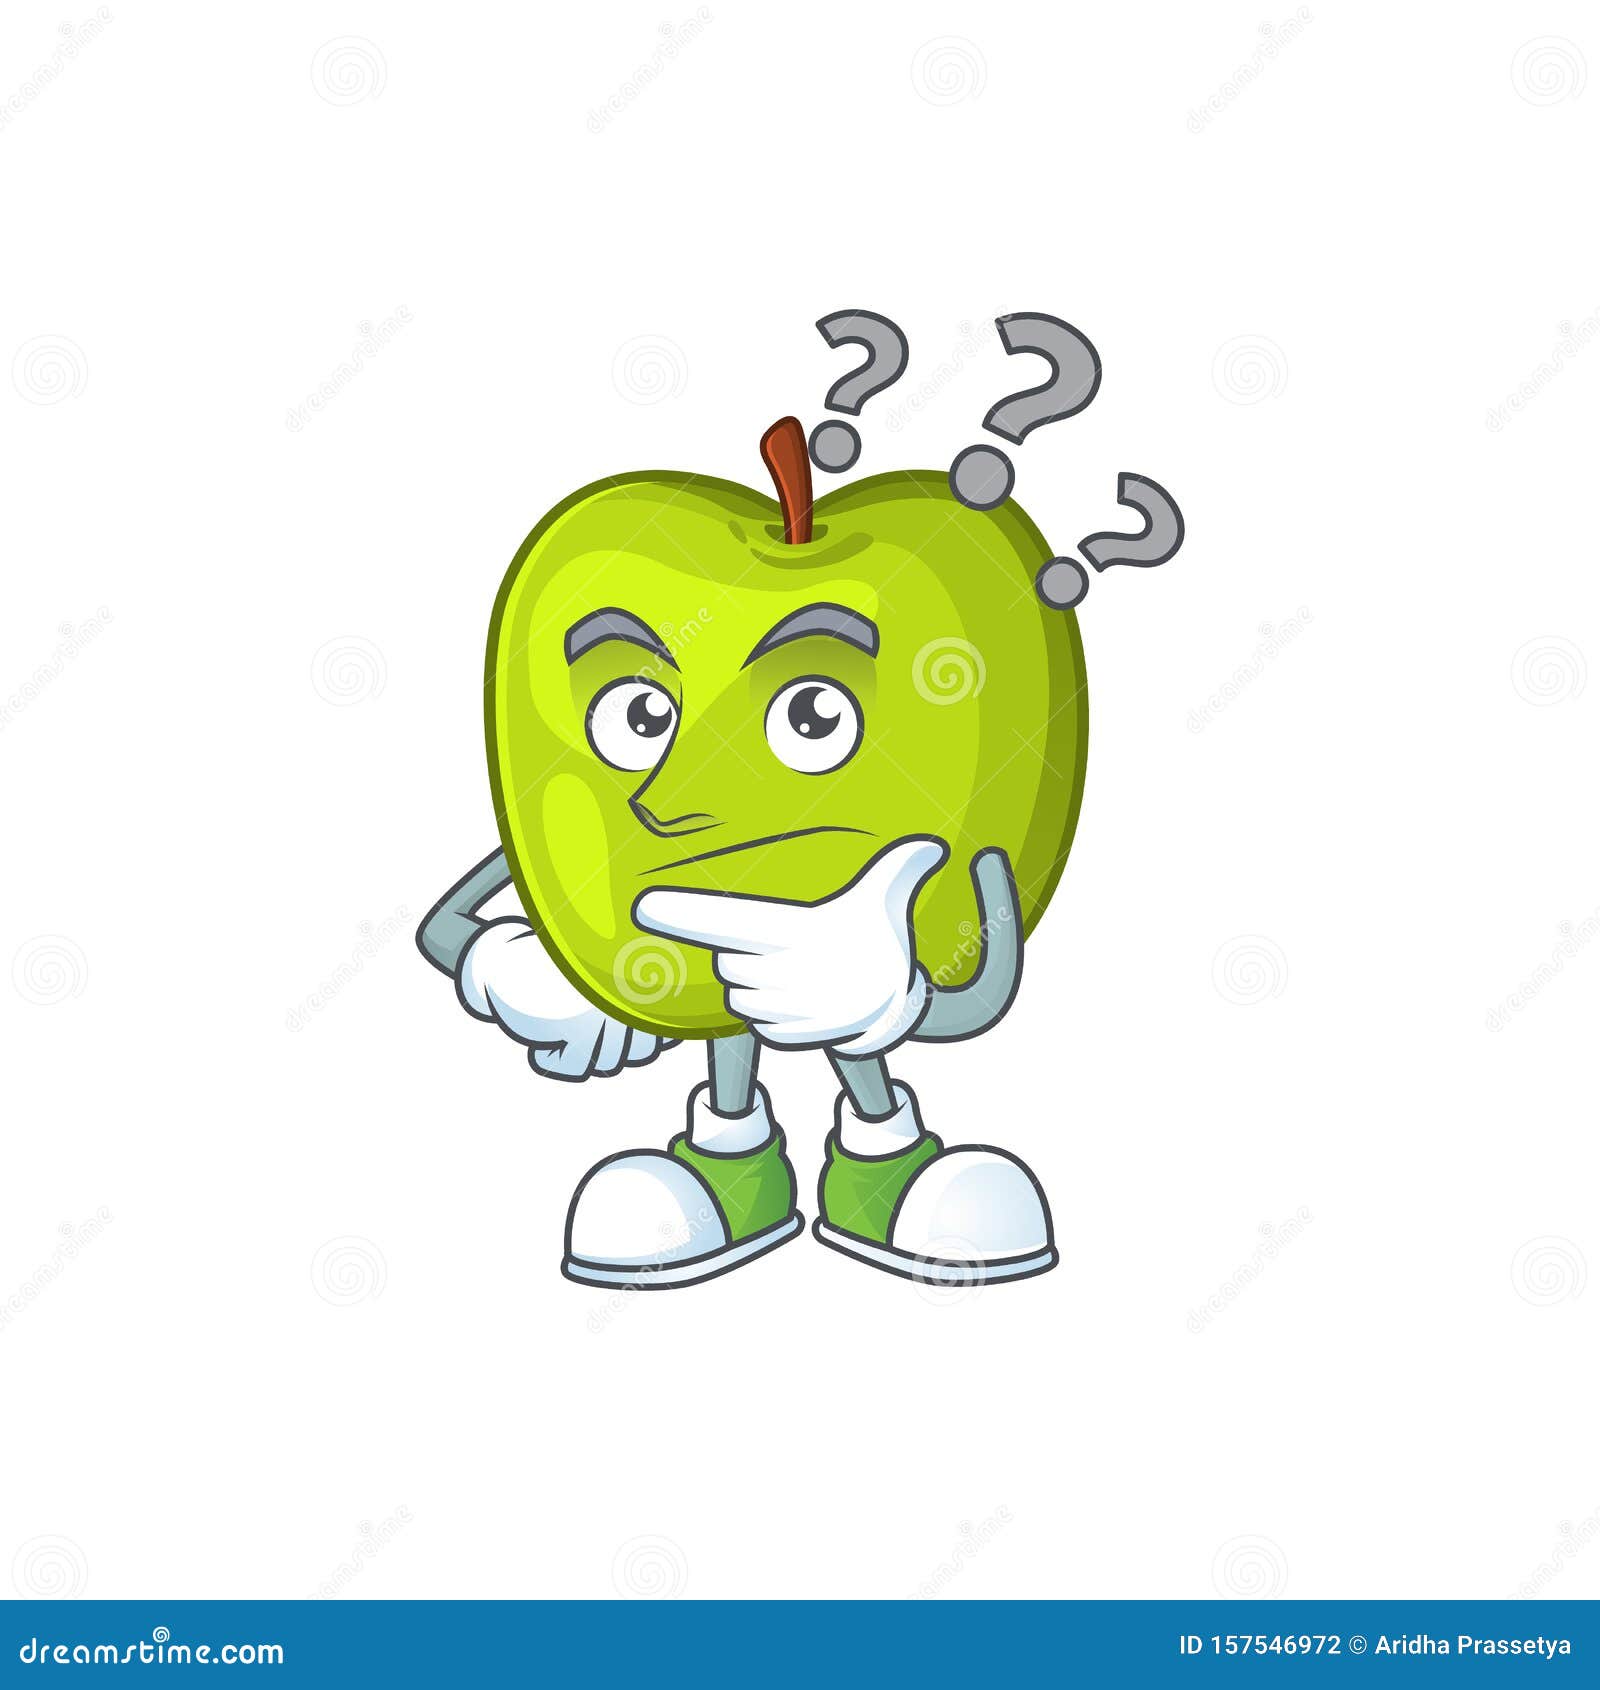 Thinking Granny Smith Green Apple Cartoon Mascot Stock Vector -  Illustration of cute, happy: 157546972